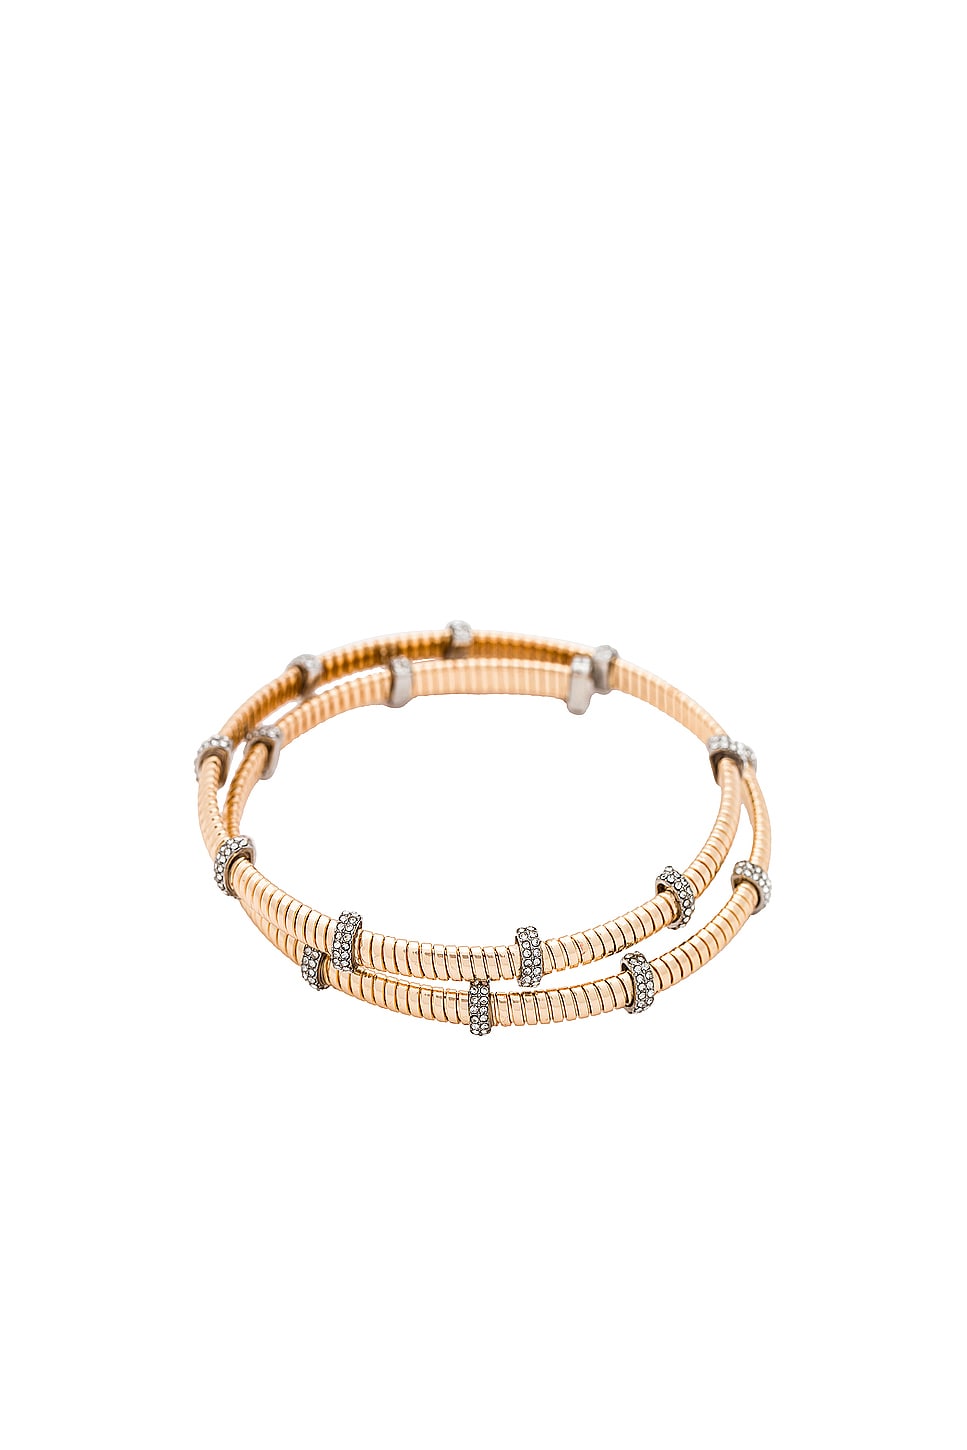 BaubleBar Eve Cuff Bracelet in Gold | REVOLVE